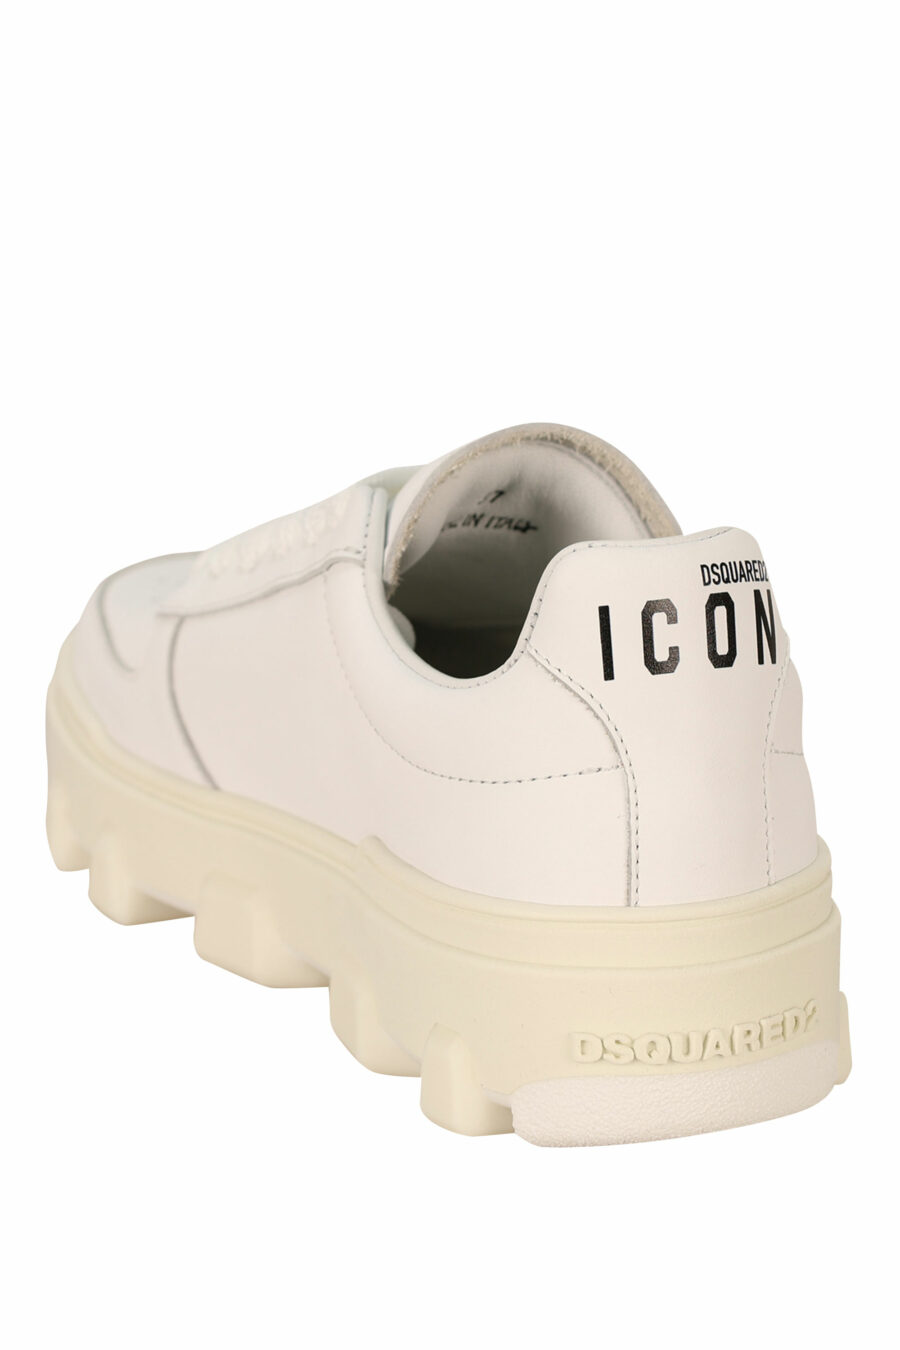 Zapatillas blancas con suela blanca y logo - 8055777311240 3